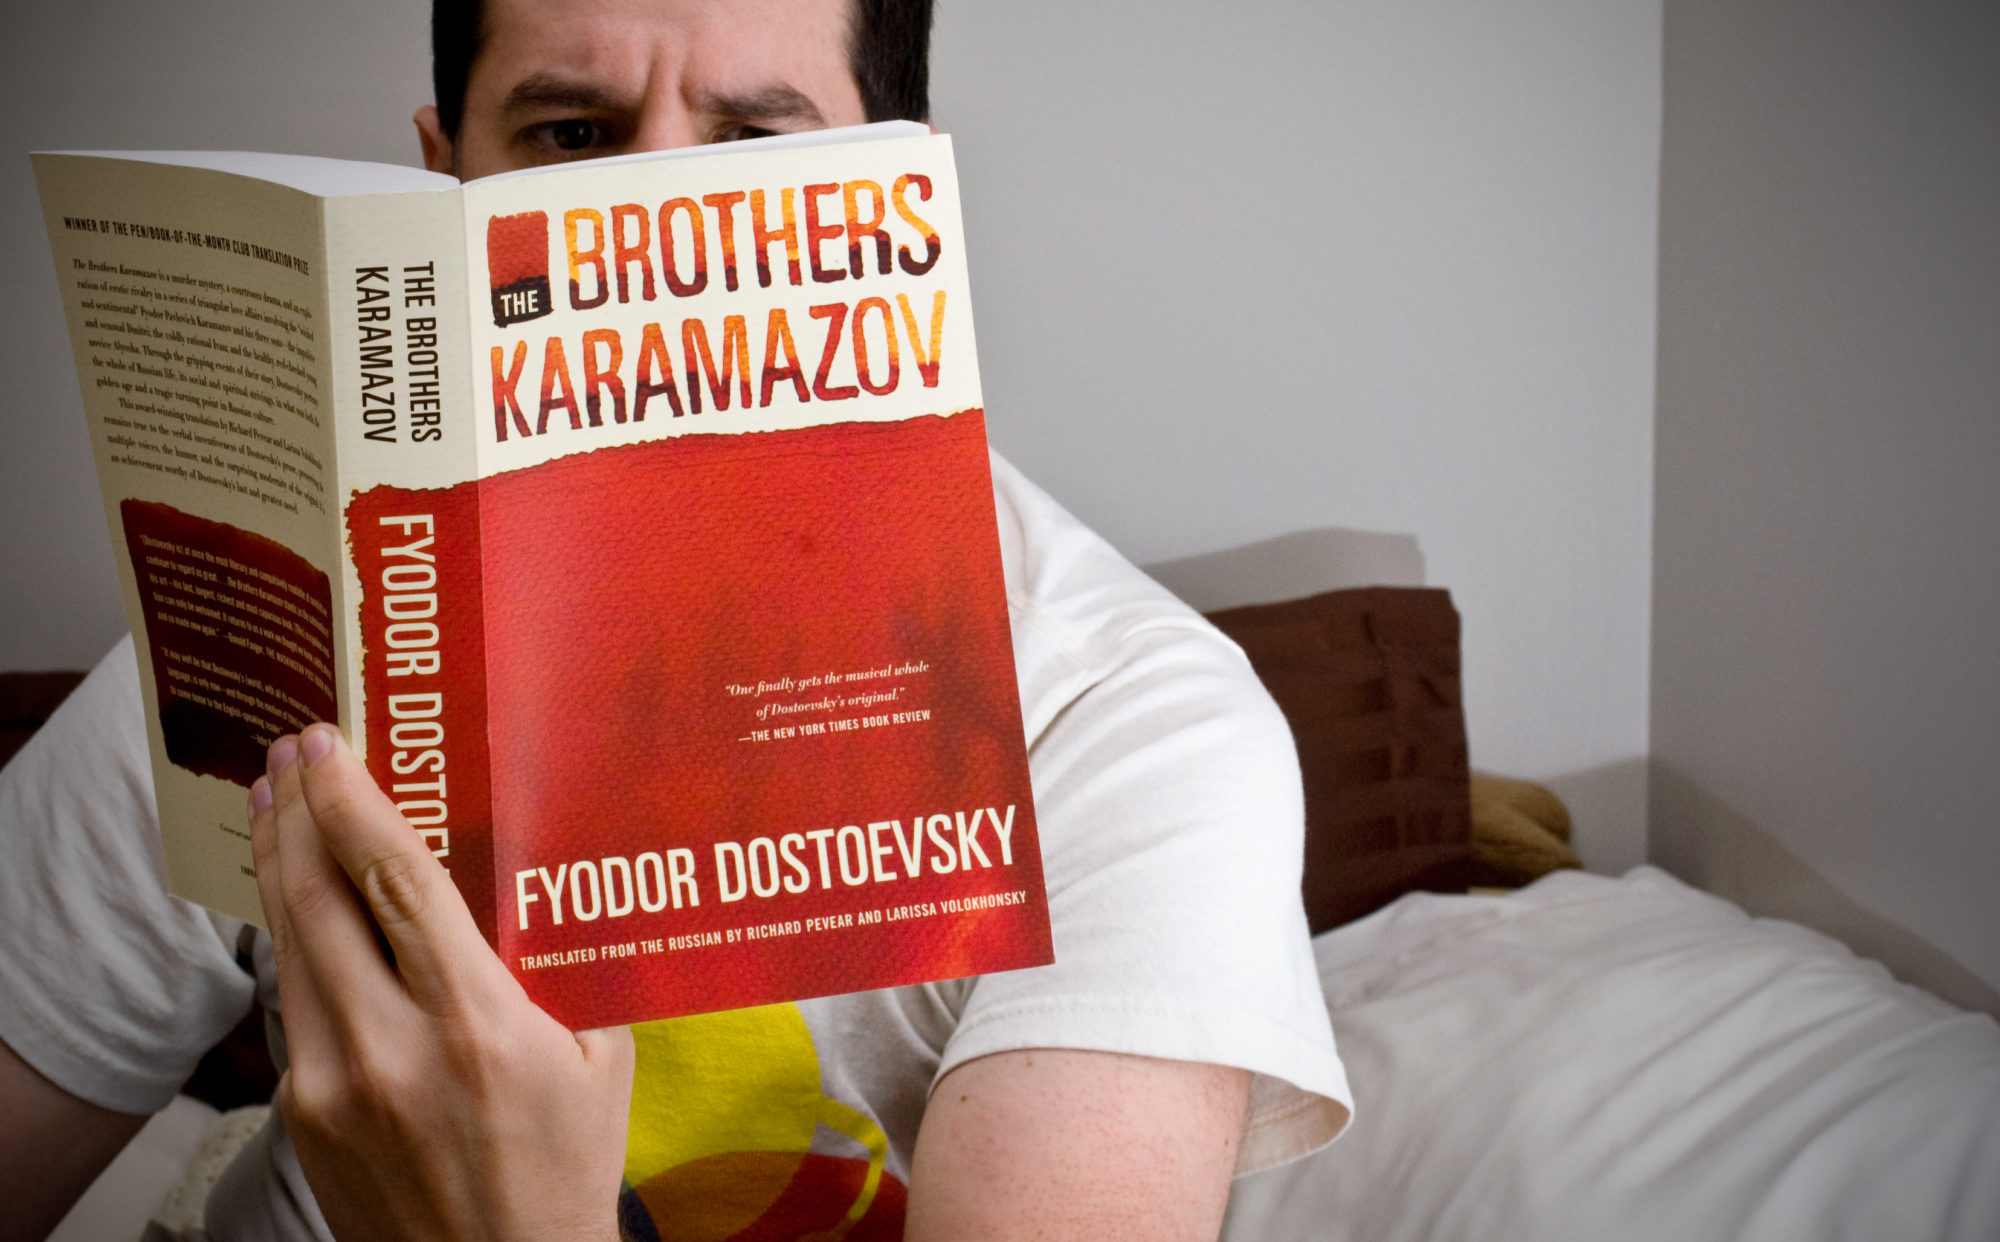 Dostoevsky’s “Russian God”: Russian Attitude Toward Faith and Christianity